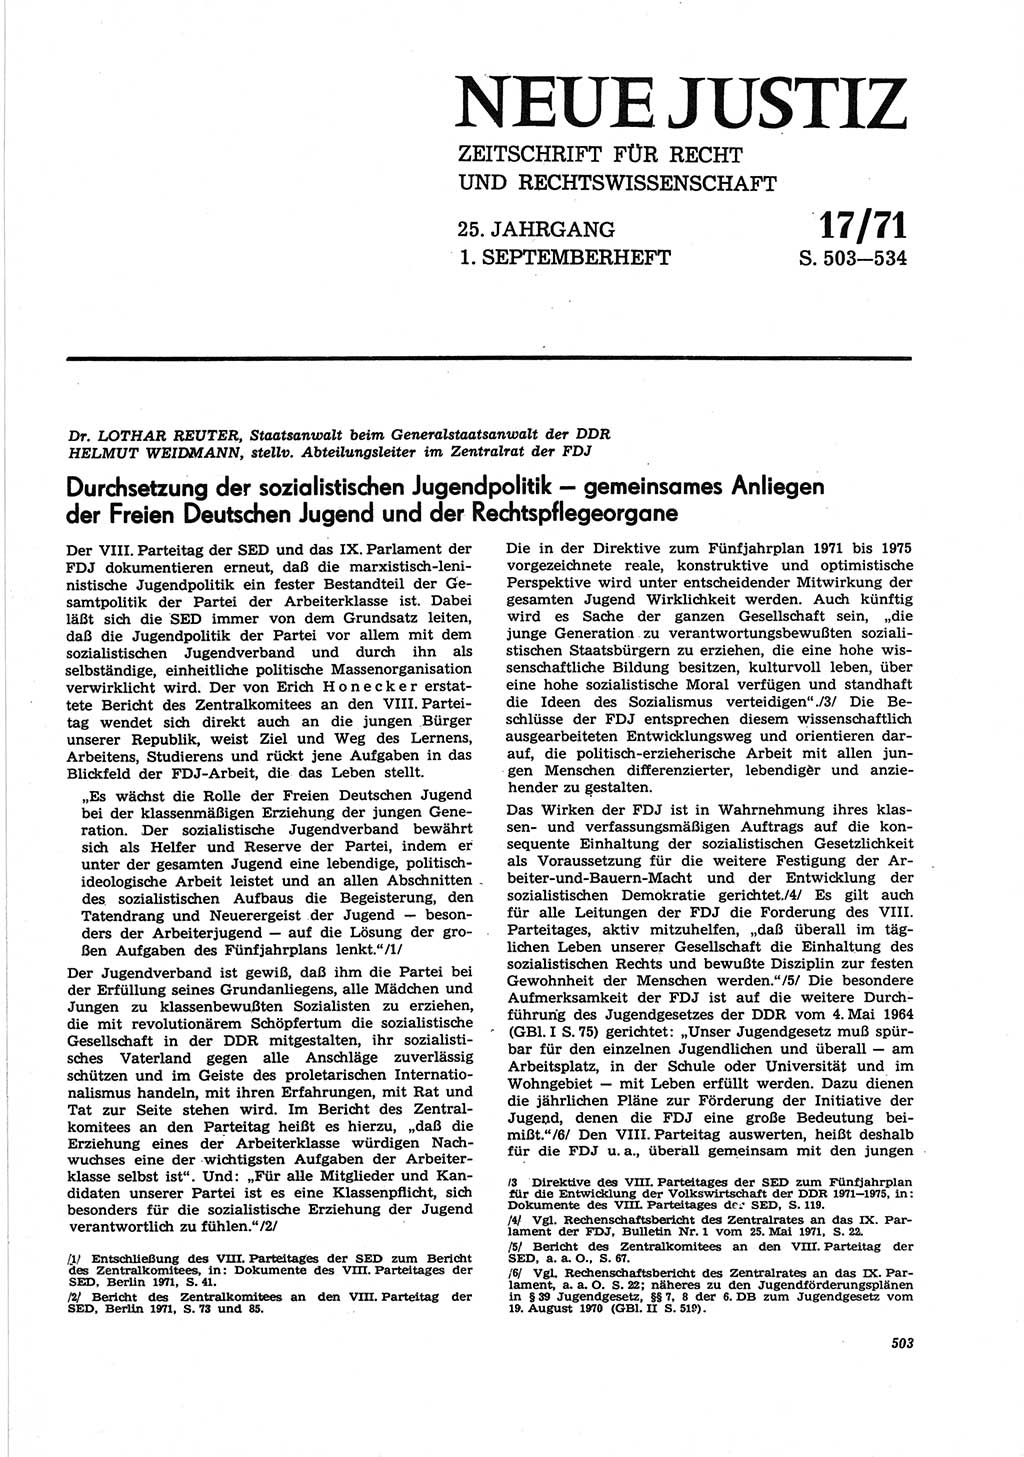 Neue Justiz (NJ), Zeitschrift für Recht und Rechtswissenschaft [Deutsche Demokratische Republik (DDR)], 25. Jahrgang 1971, Seite 503 (NJ DDR 1971, S. 503)